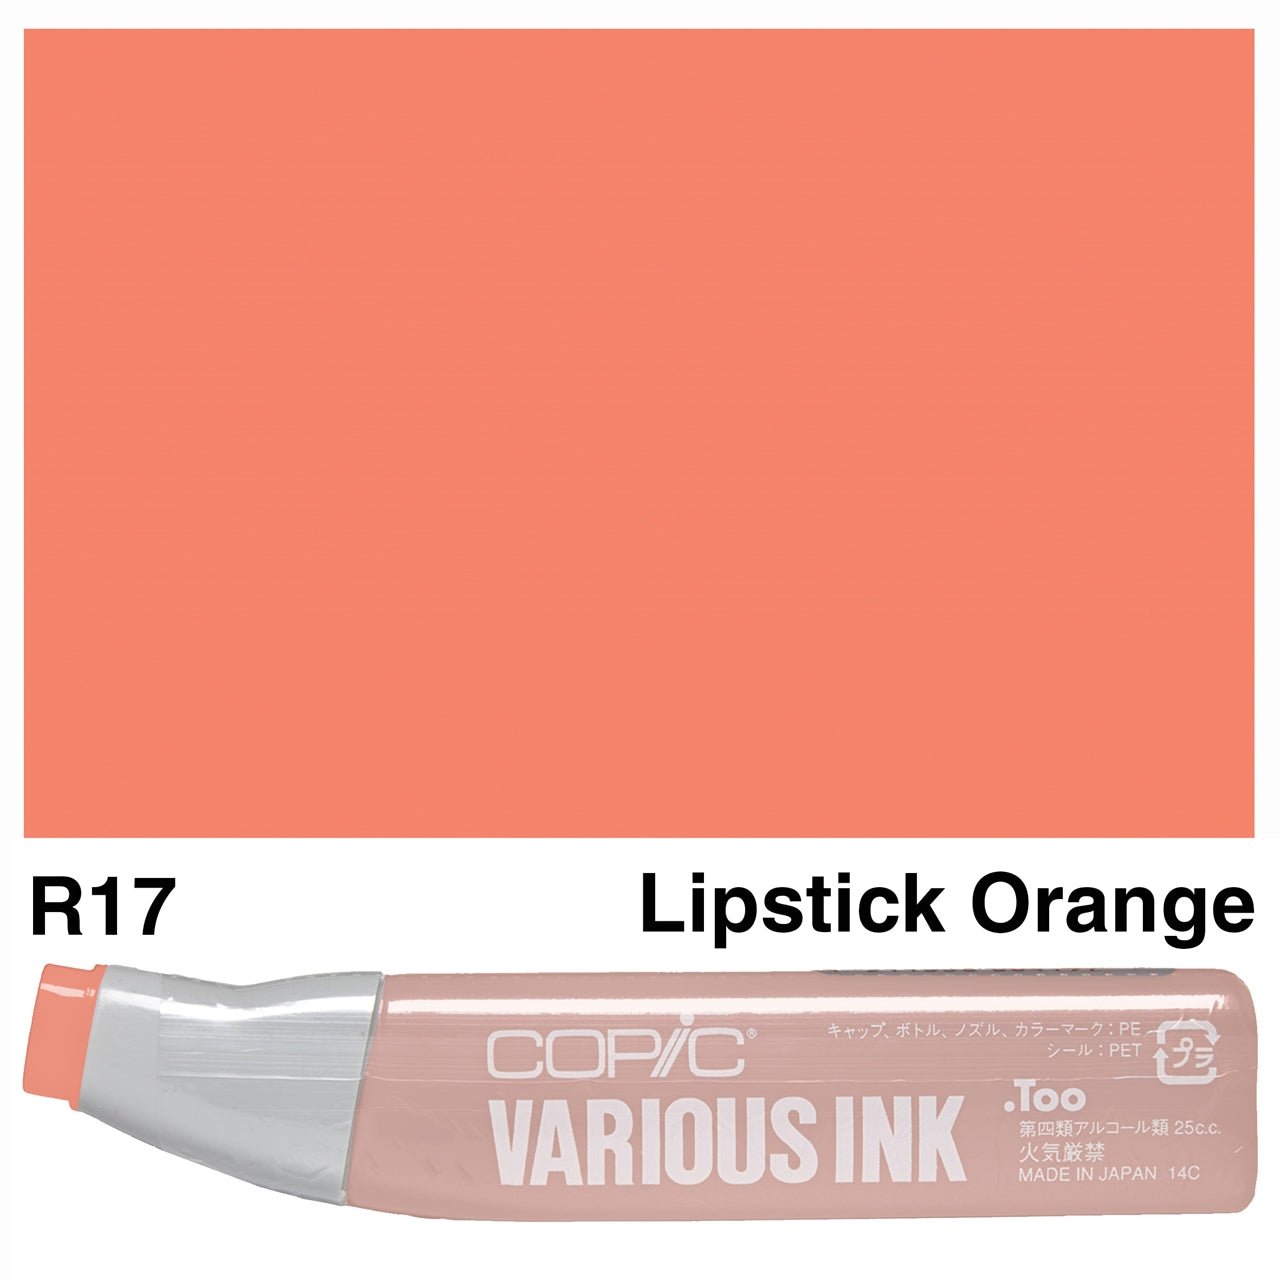 Copic Various Ink R17 Lipstick Orange - theartshop.com.au